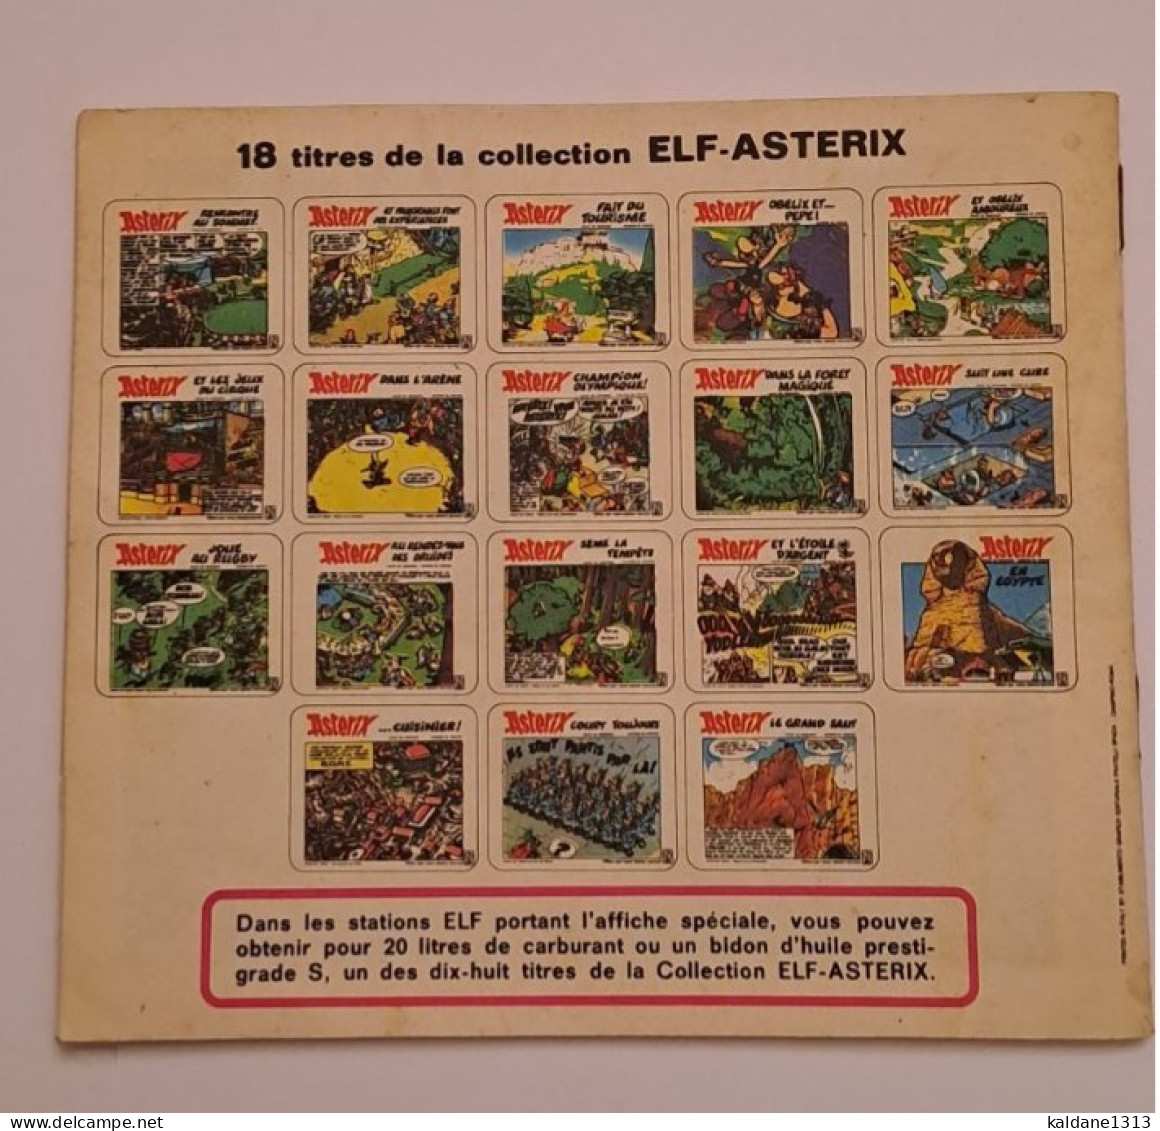 Astérix Suit Une Cure Mini Album Offert Les Stations Essence Elf 1973 - Astérix